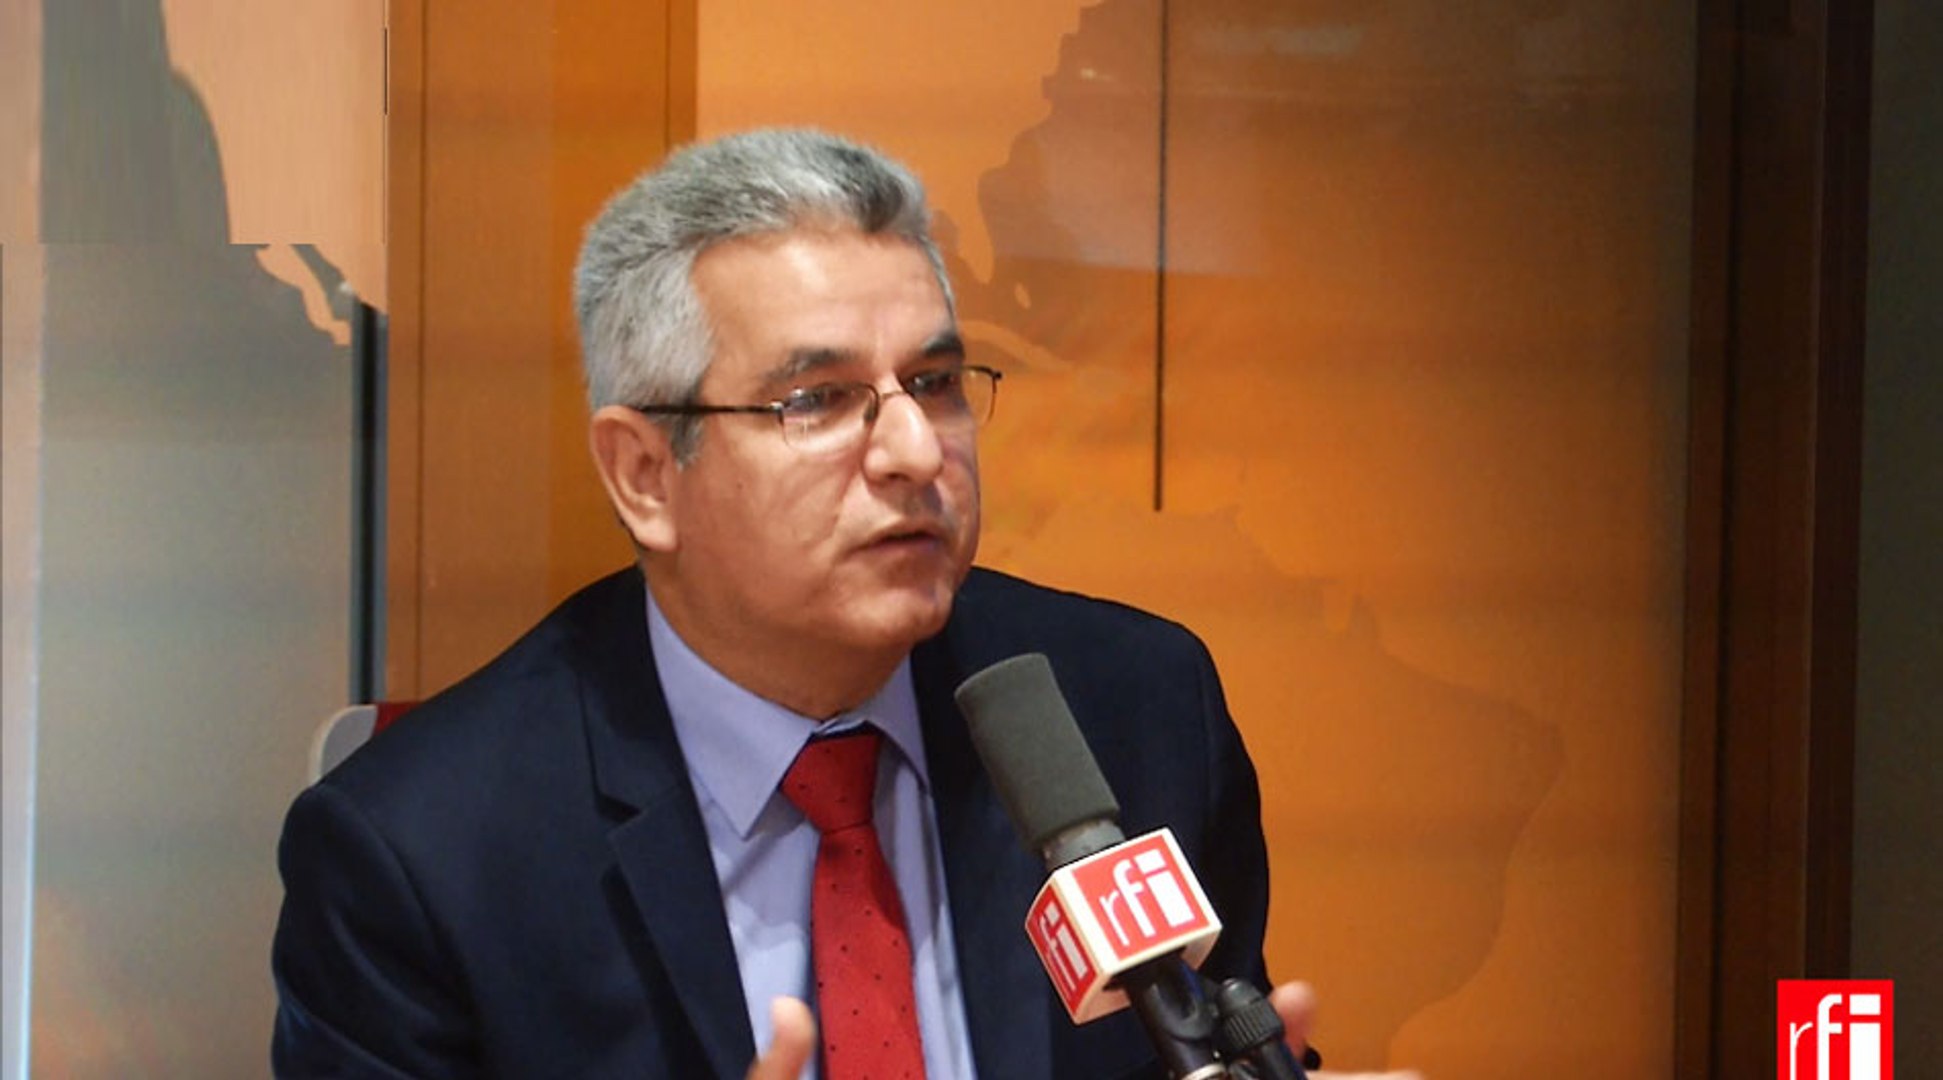 Elio Rodríguez Perdomo, ambassadeur de Cuba: «les relations France-Cuba ont  toujours été positives» - Vidéo Dailymotion